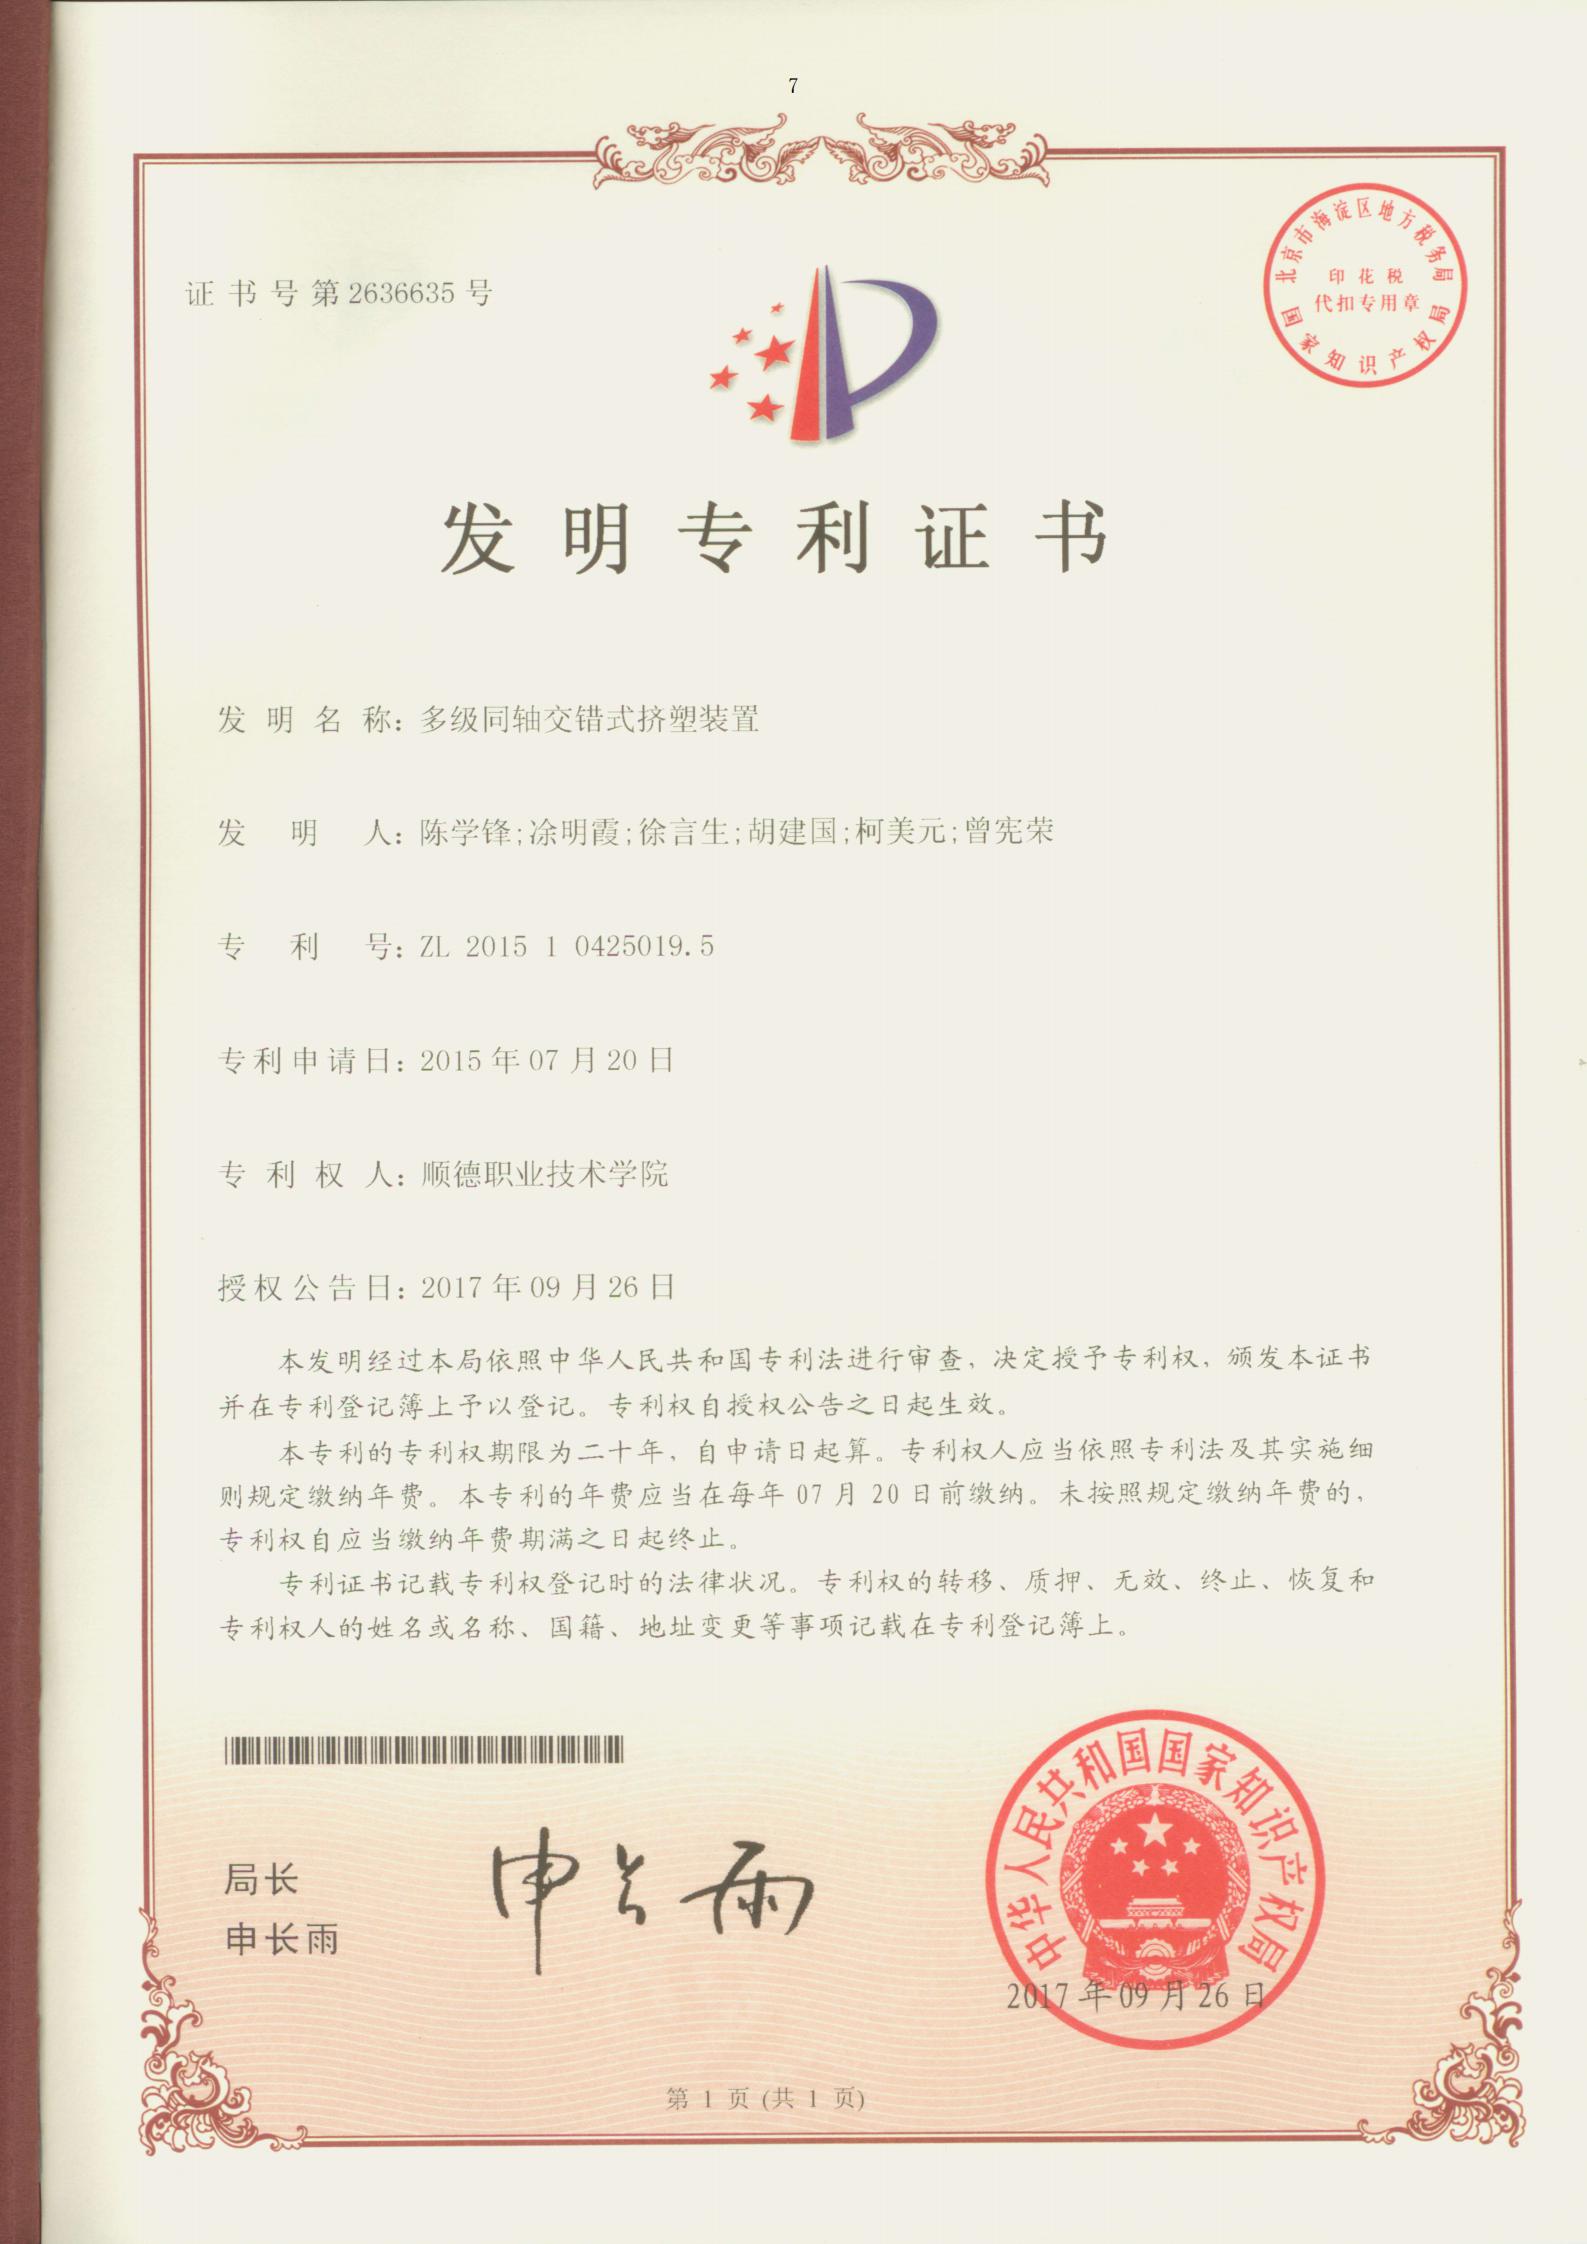 16.多级同轴交错式挤塑装置-中国发明专利证书_00.jpg